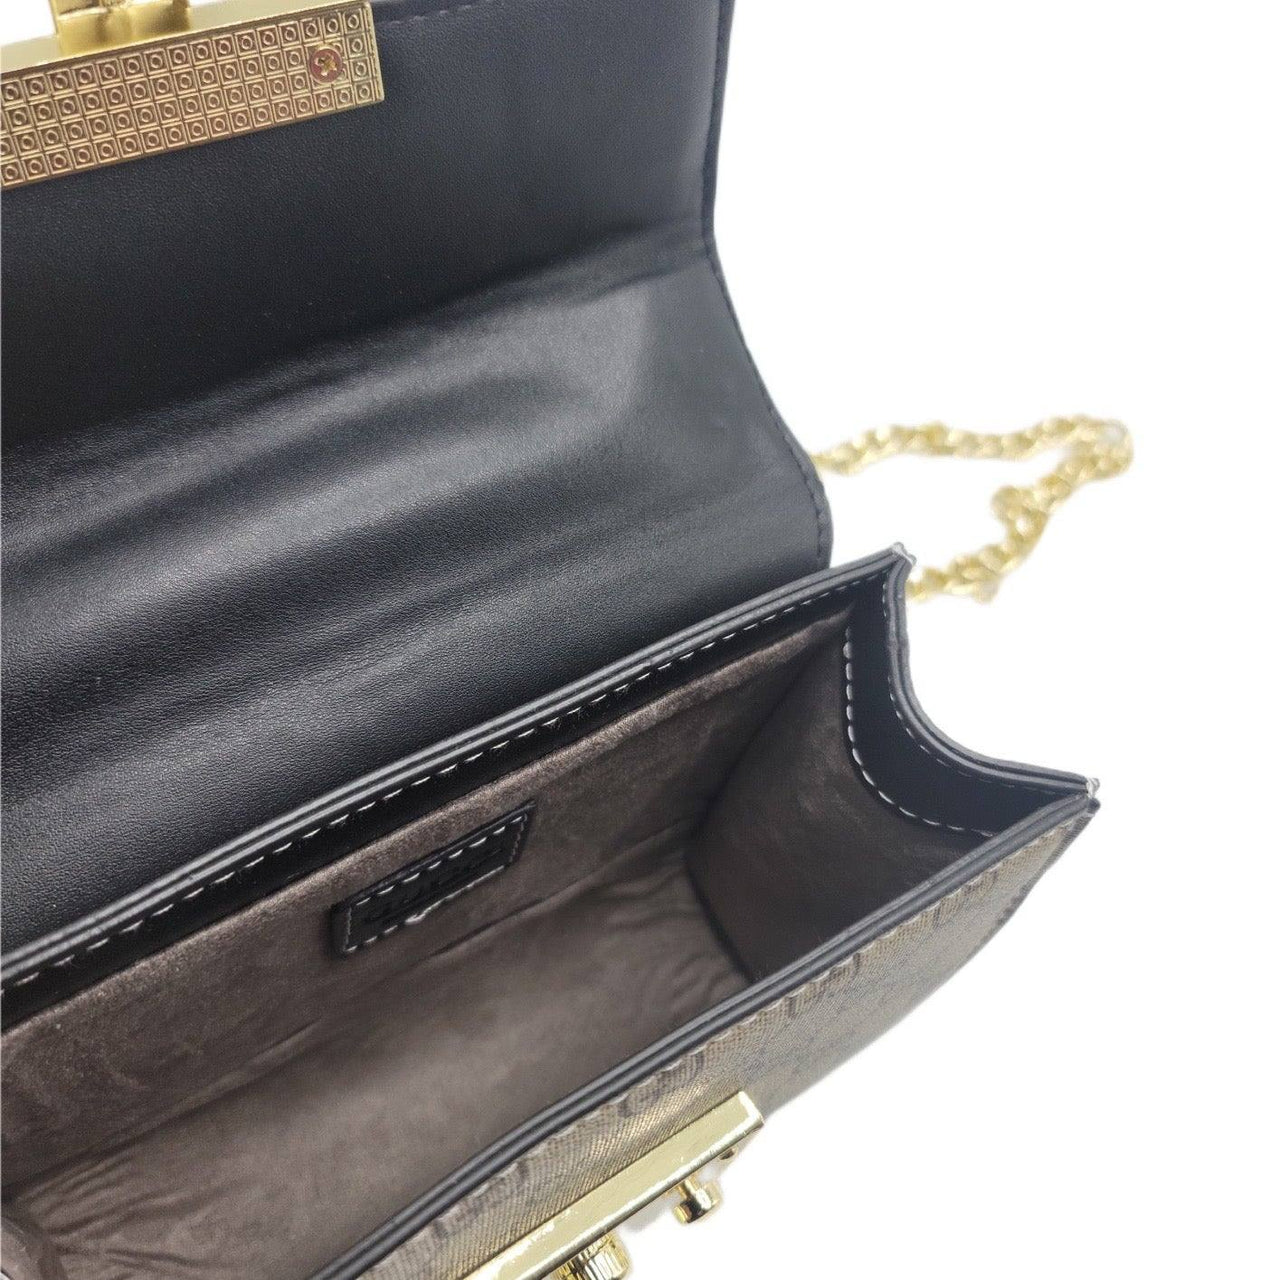 The Bag Couture Handbags, Wallets & Cases Gucci Crossbody Bag Classic Black